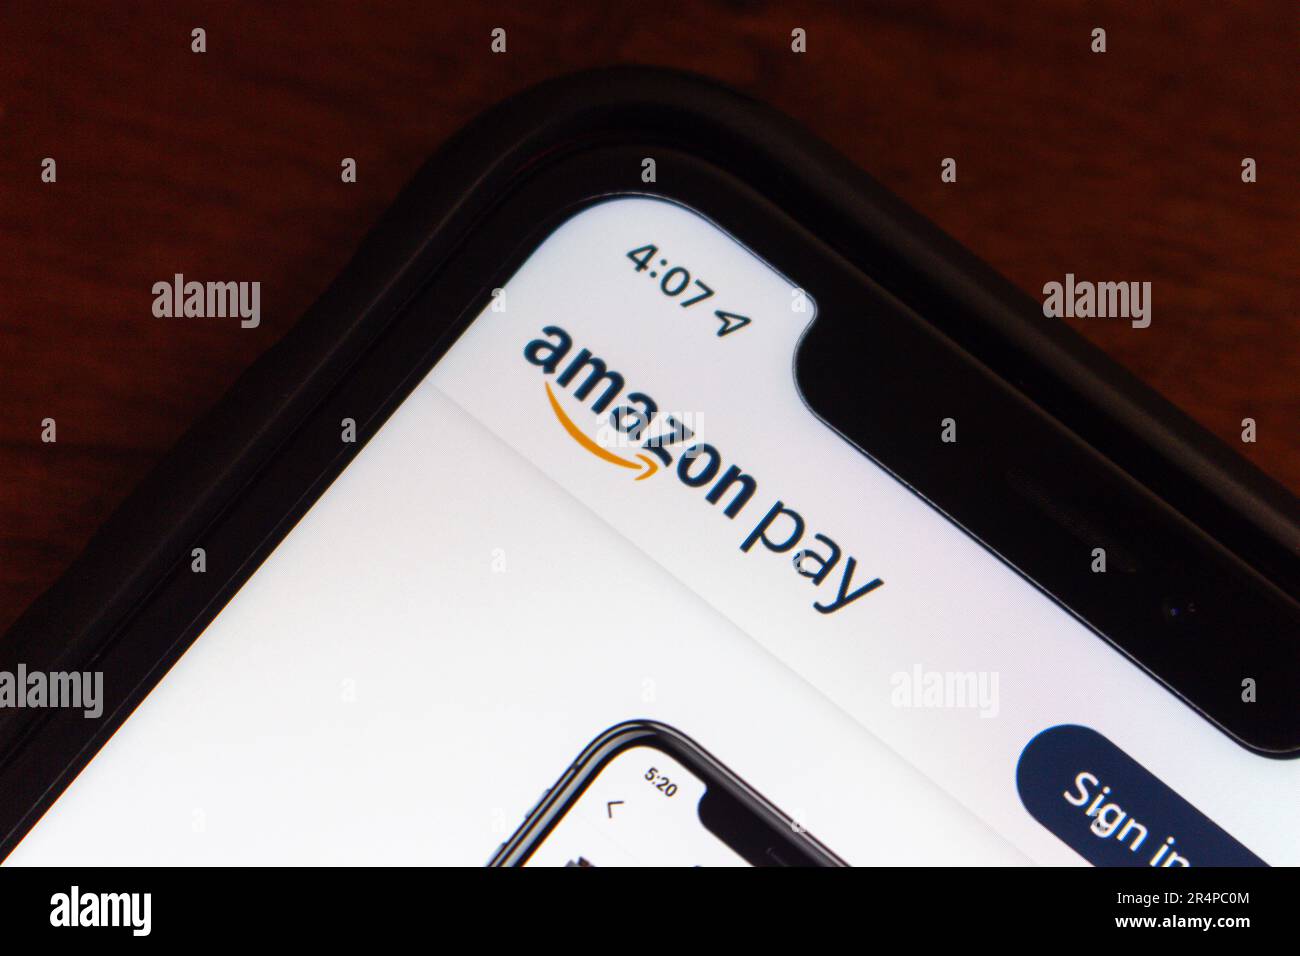 Das Amazon Pay-Logo wird auf der Website auf einem iPhone-Bildschirm angezeigt. Amazon Pay ist ein Online-Zahlungsdienst von Amazon für verschiedene zugehörige Shopping-Websites. Stockfoto